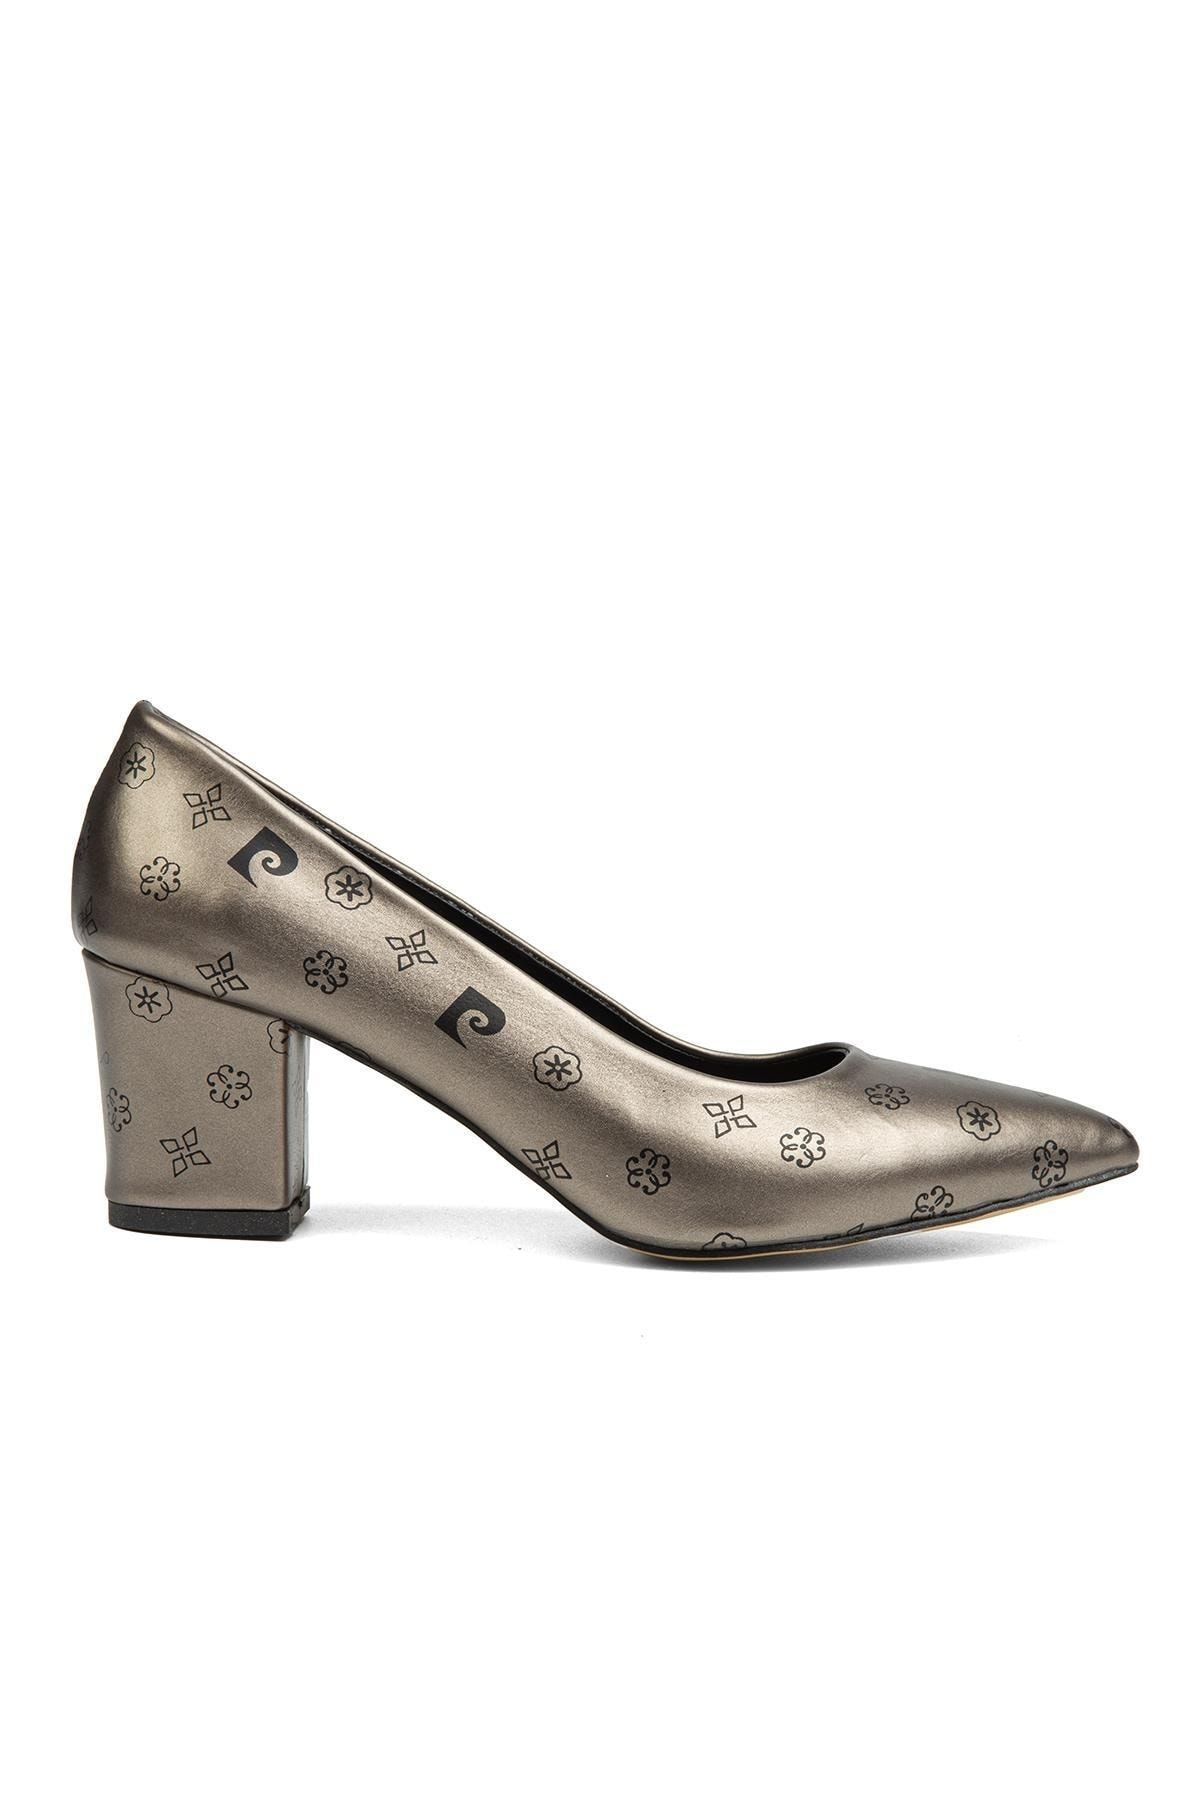 Pierre Cardin ® | Pc-50176 - 3955 Platin Desen - Kadın Topuklu Ayakkabı